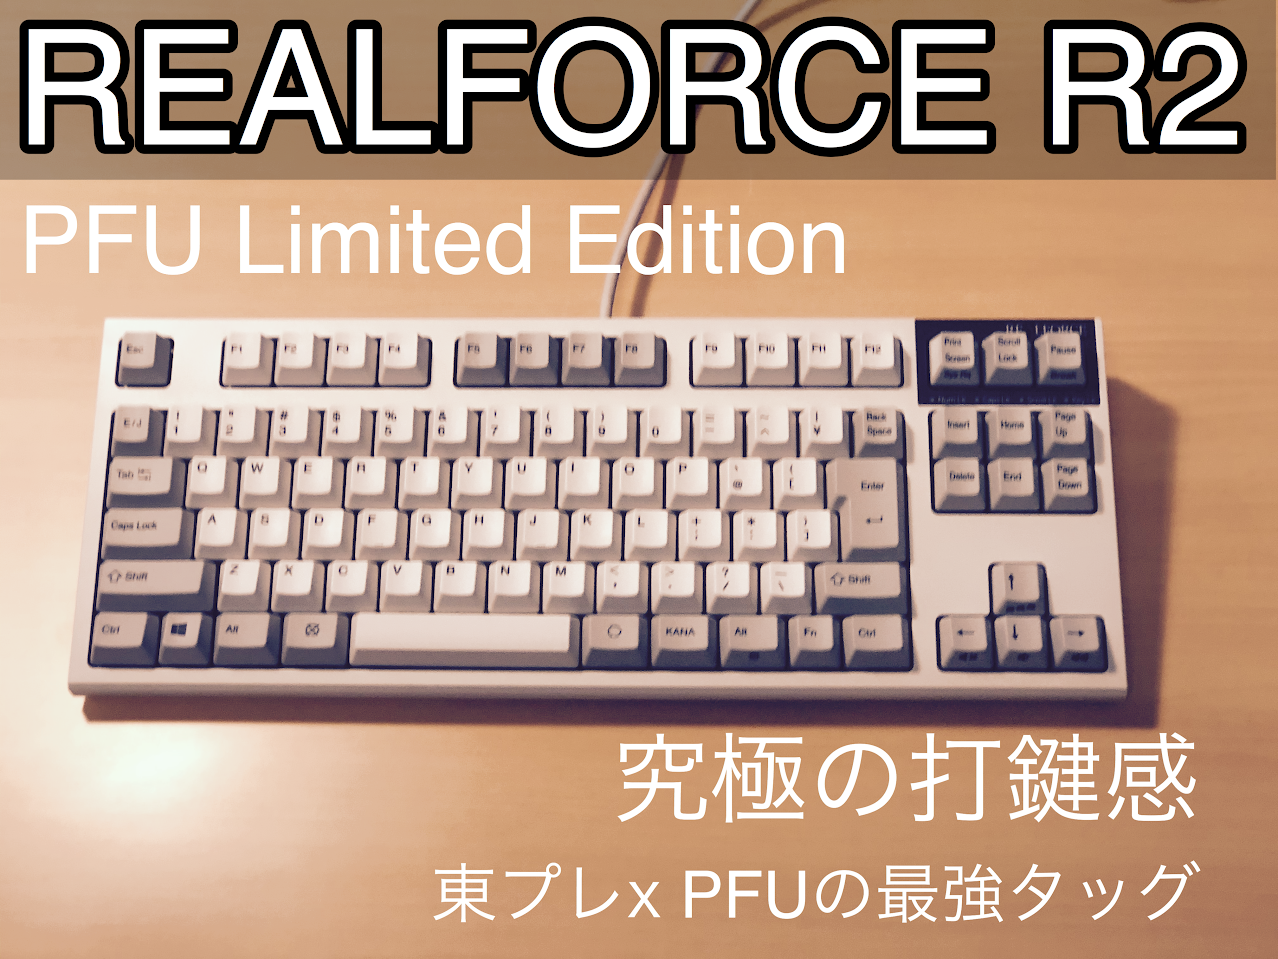 カーリング  Edition」 Limited テンキーレス「PFU R2 REALFORCE PC周辺機器